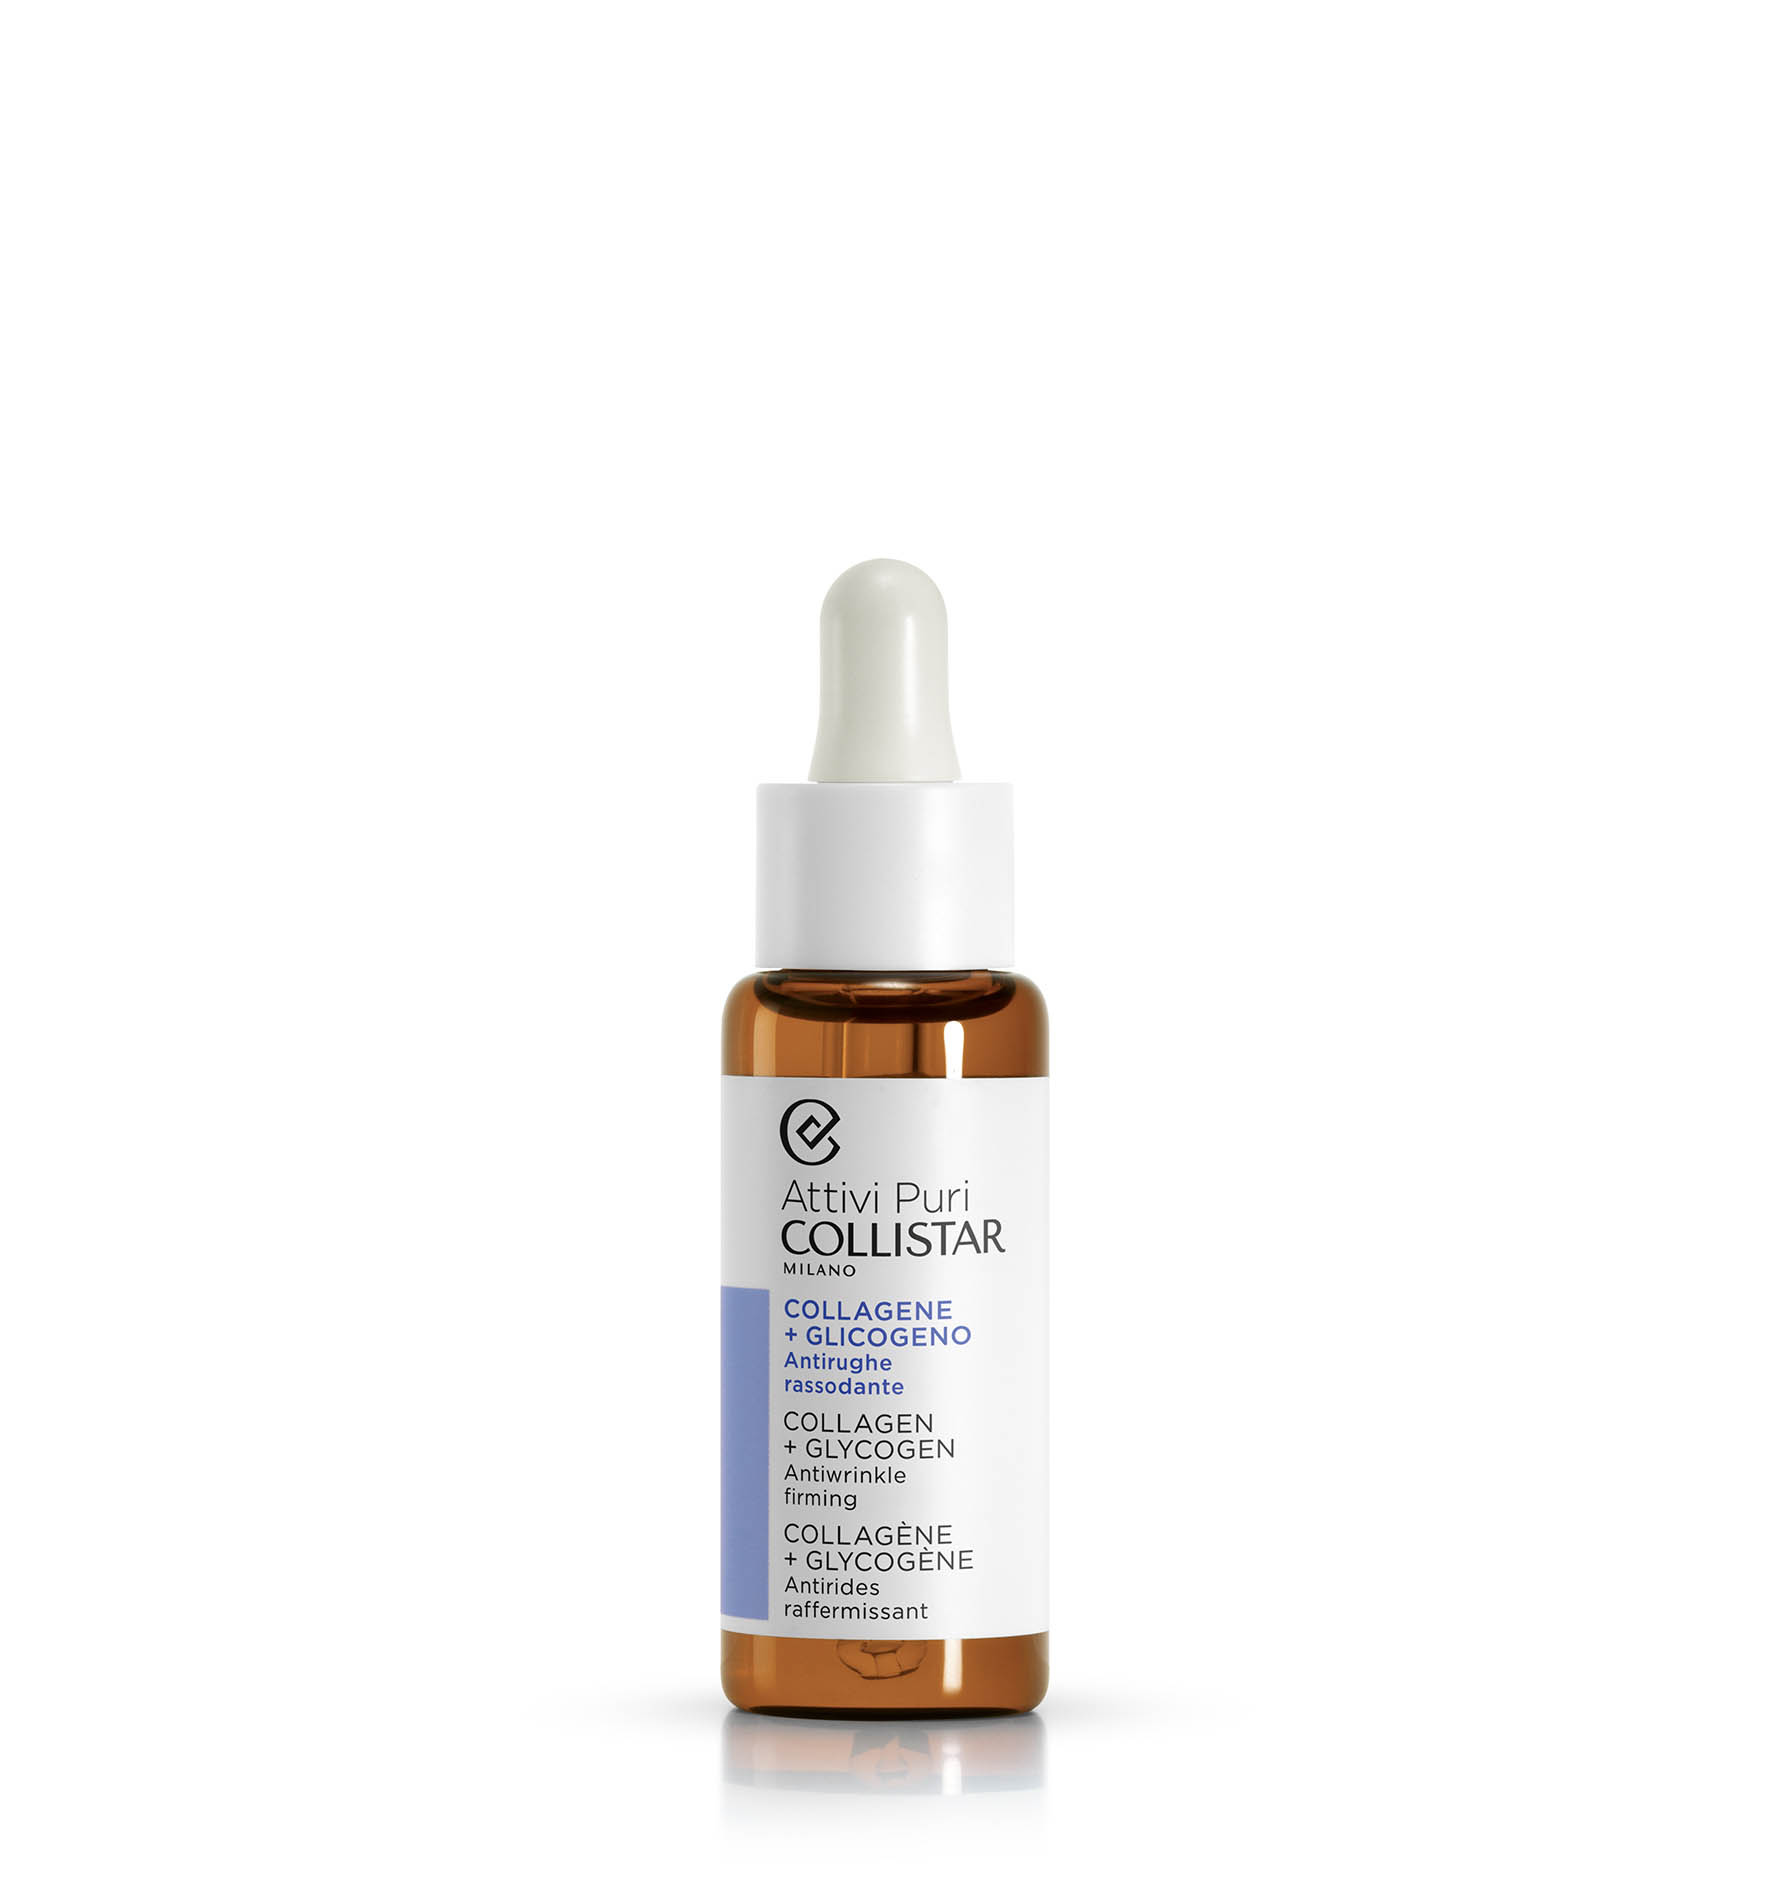 COLLAGENE + GLICOGENO 30 ml - Attivi Puri | Collistar - Shop Online Ufficiale